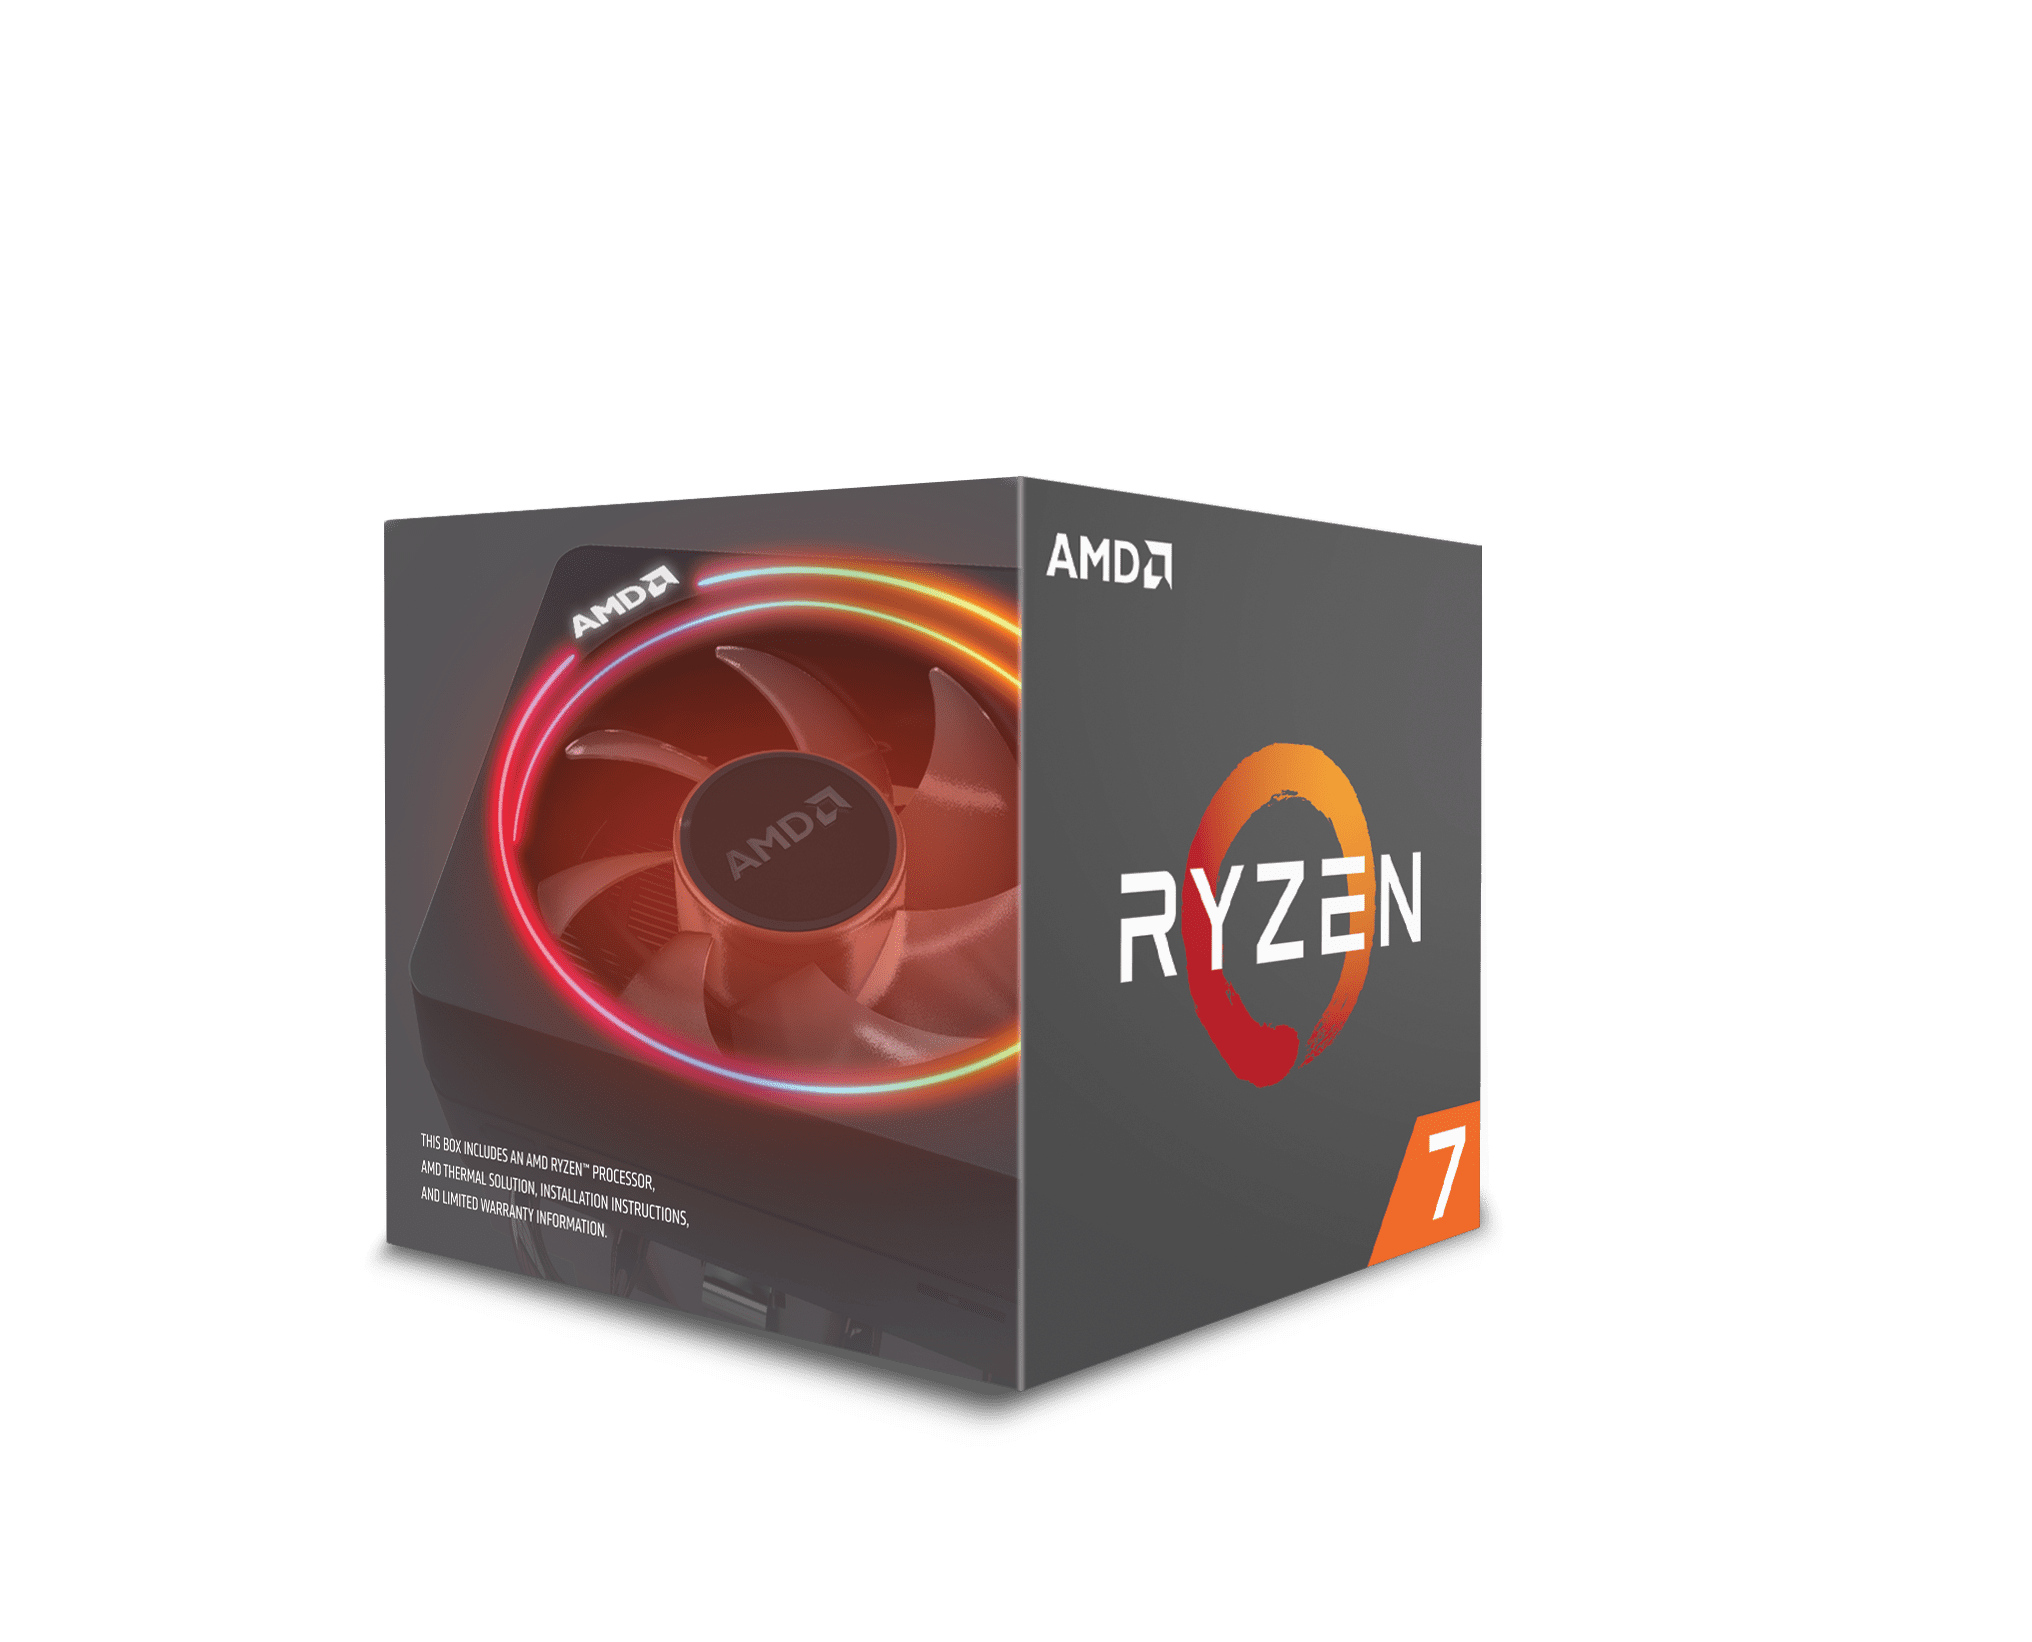 Socket AM4 105W YD270XBGAFB 4.3 GHz Max Boost AMD Ryzen 7 2700X 8-Core 3.7 GHz